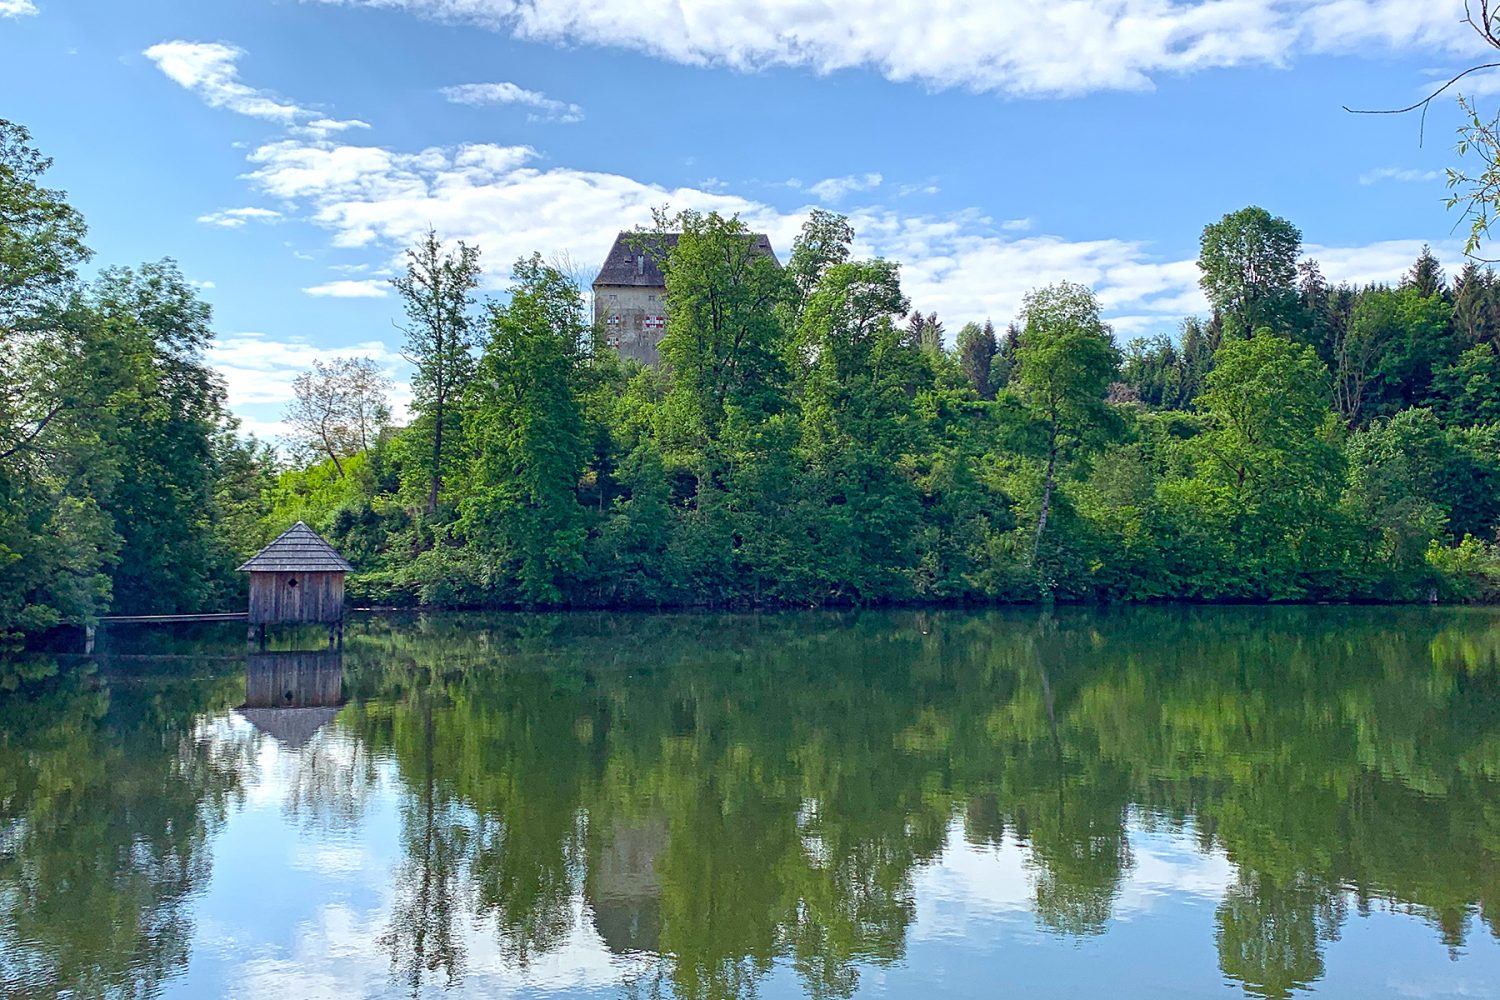 Schlafen im Schloss: Die 11 schönsten Schlosshotels in Kärnten